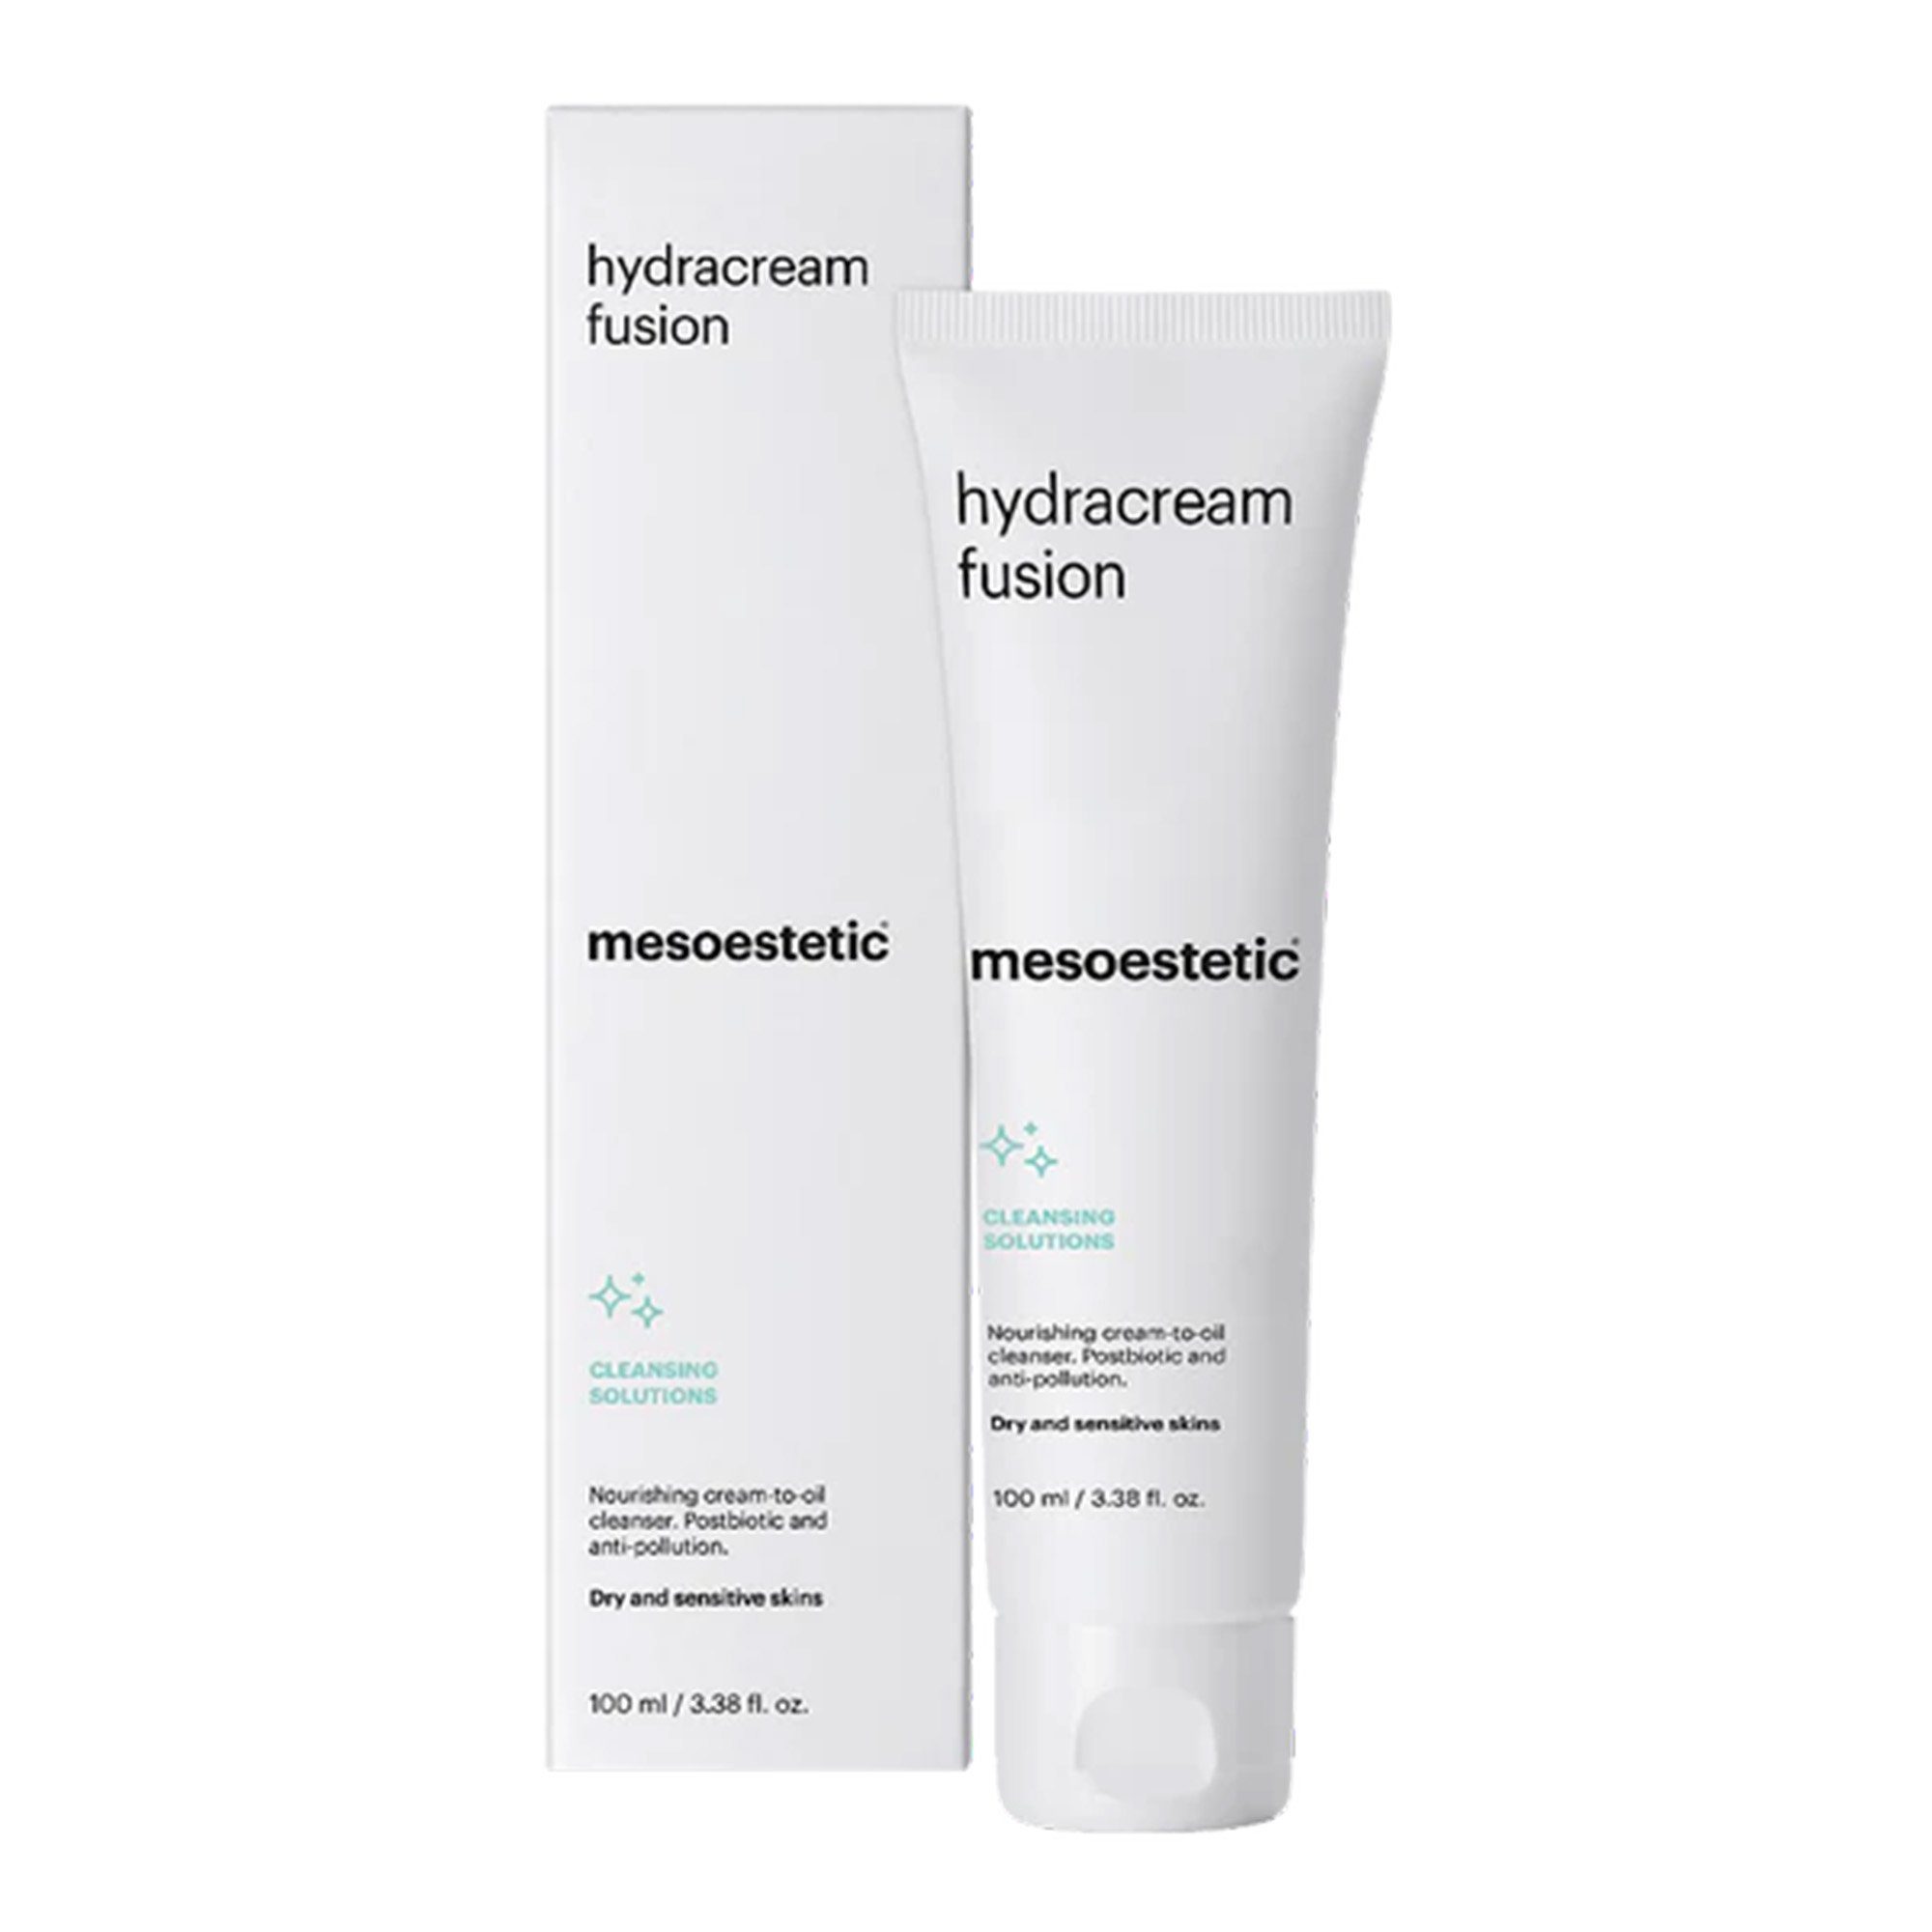 Mesoestetic Feuchtigkeitscreme Hydracream mesoestetic® Fusion, 1-tlg.